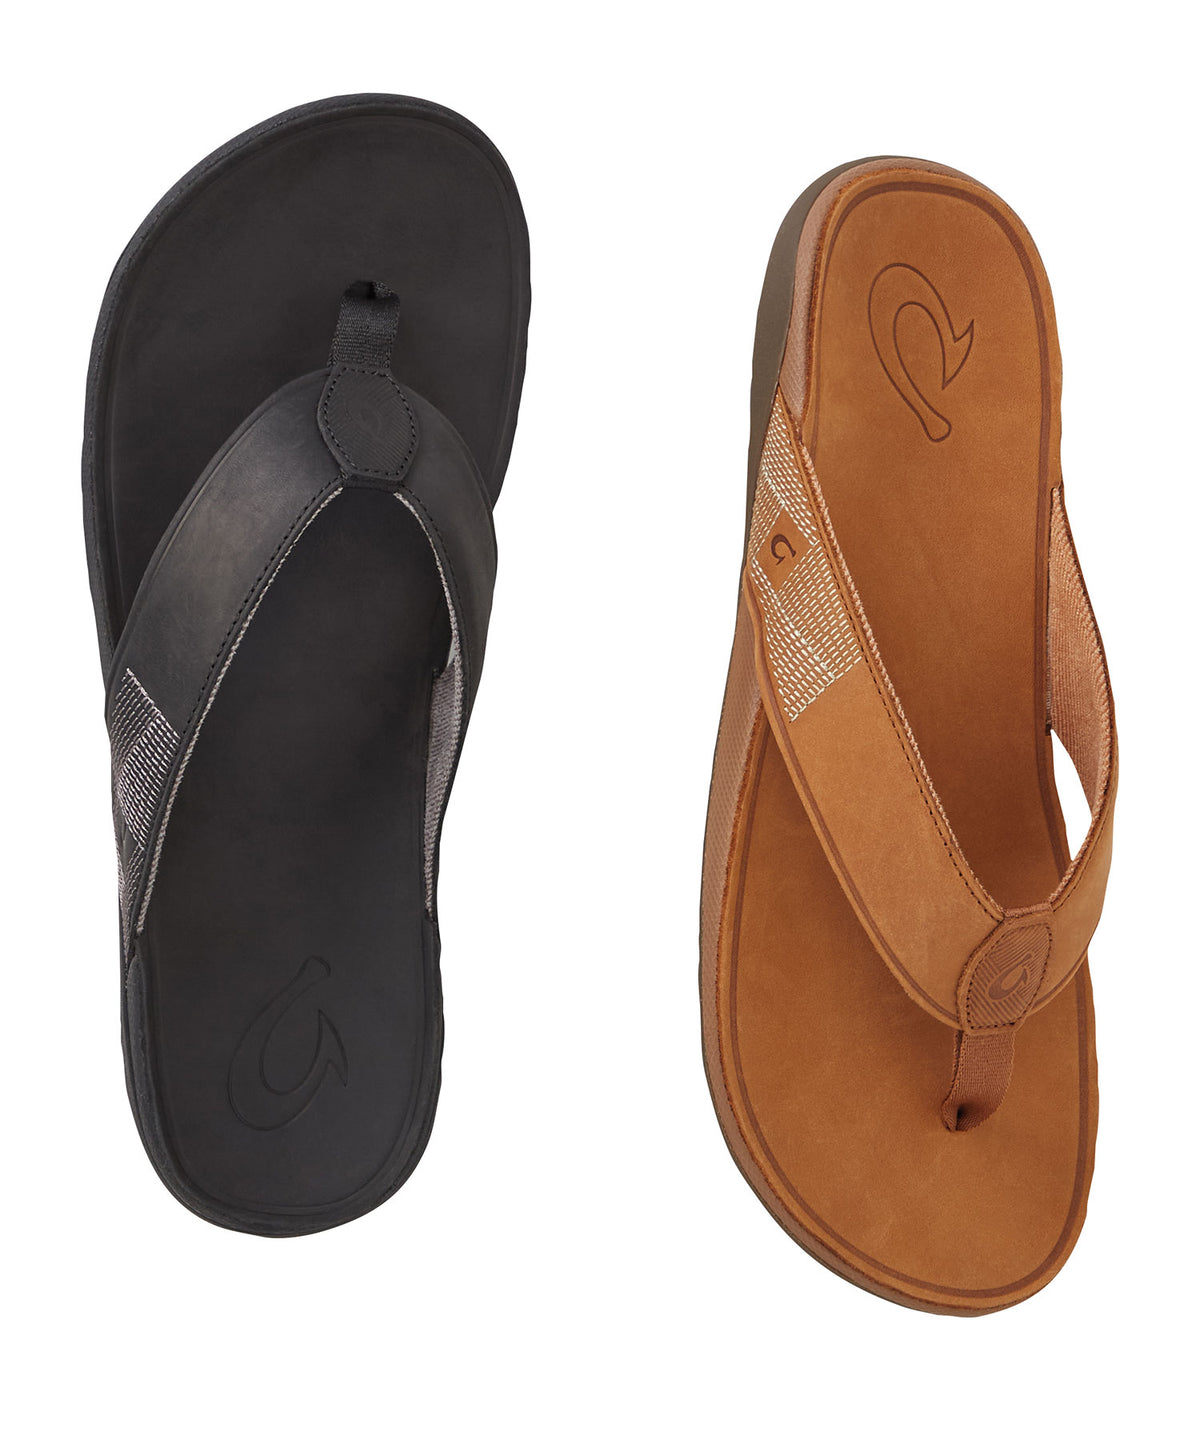 OluKai Tuahine Leather Sandal